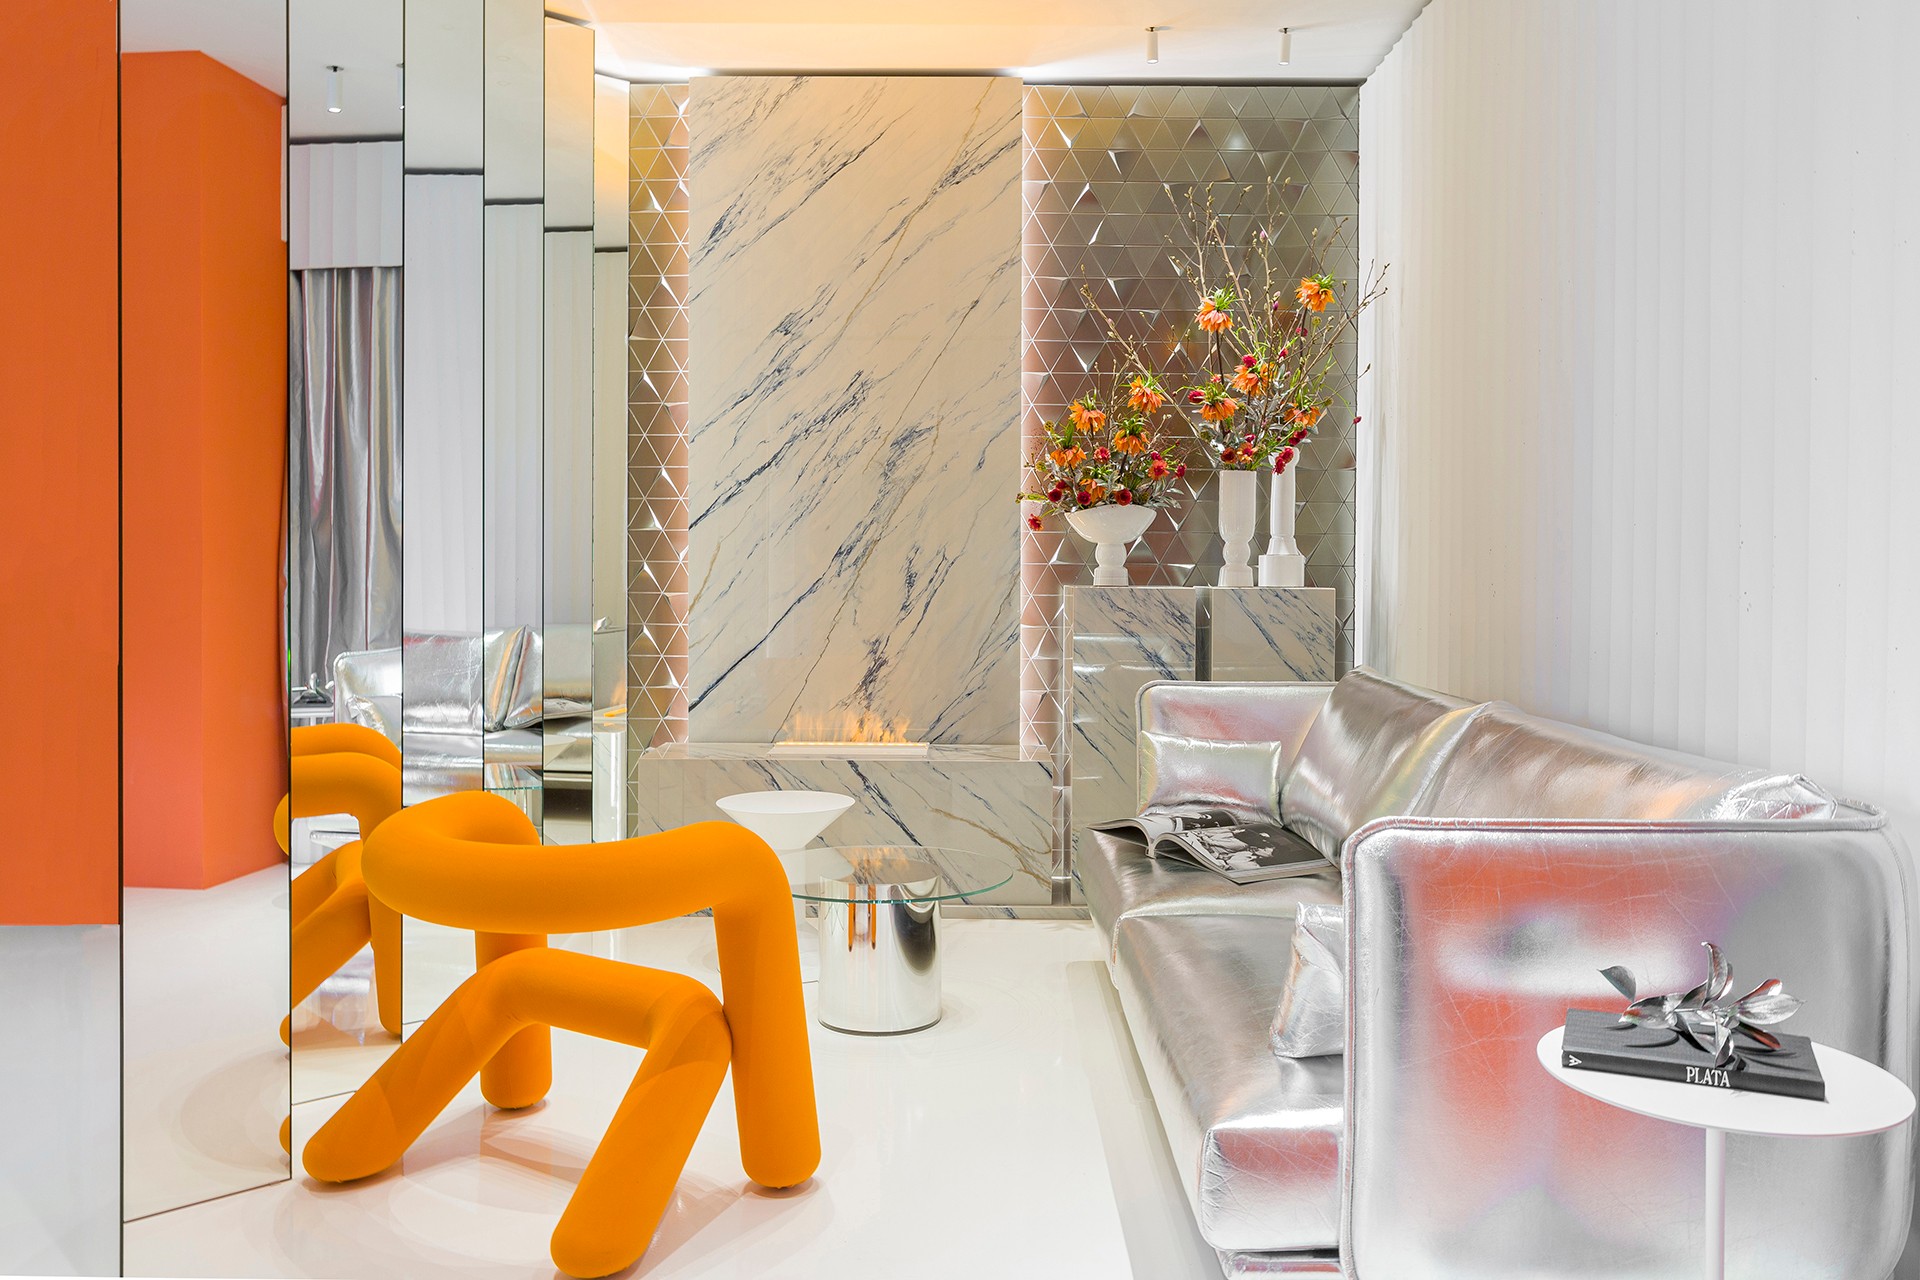 Image of 22. casa decor 2022 espacio sinmas studio salon Bajas1 in Metamorphic, Tom Dixon’s sculptural bathroom featuring Dekton Pietra Kode - Cosentino